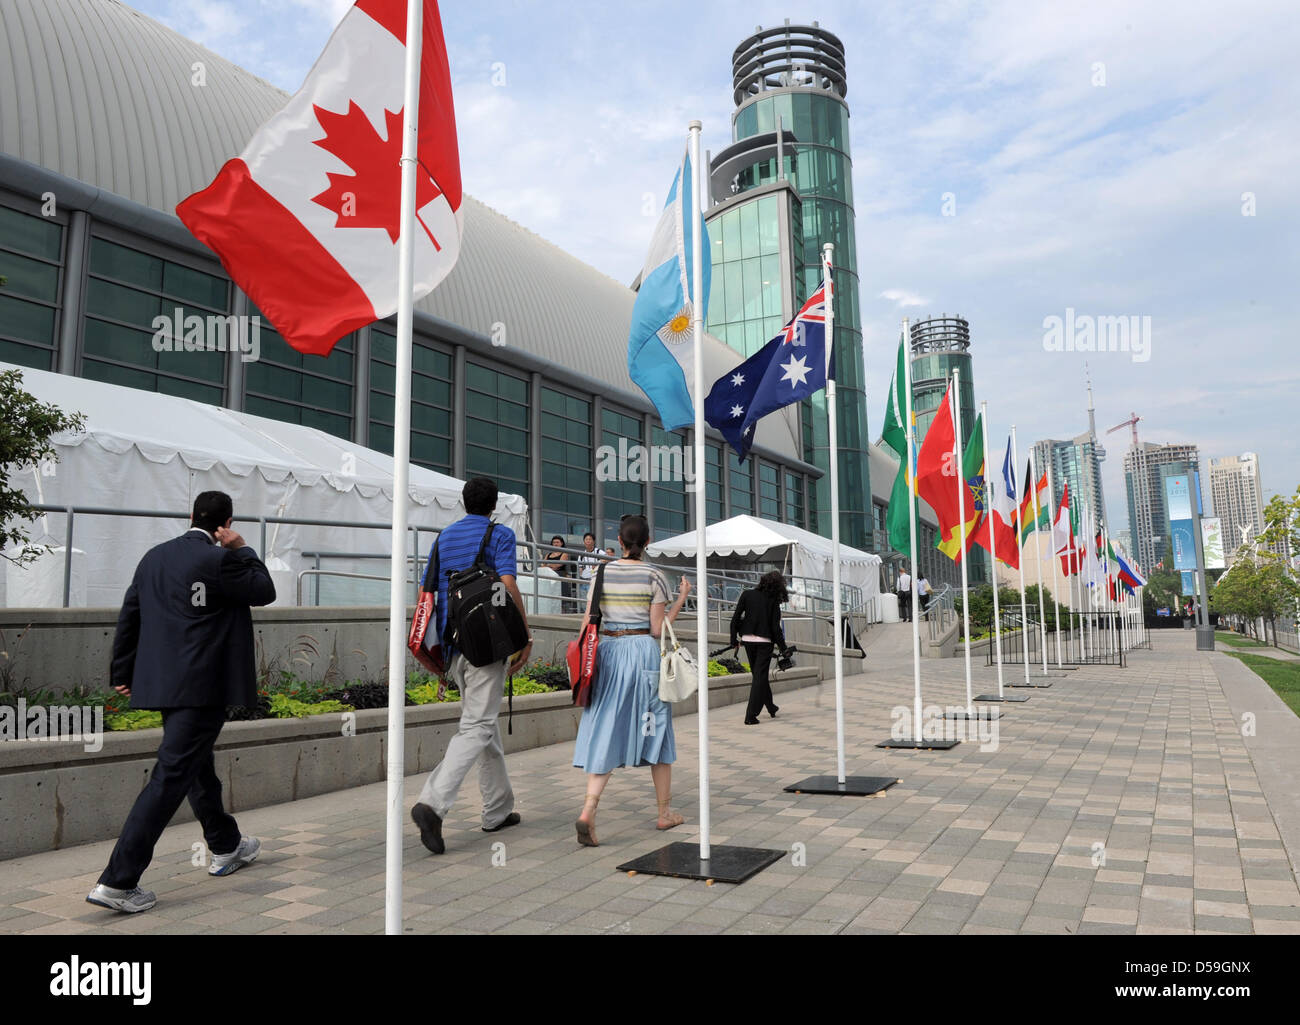 Les journalistes entrer dans le centre de presse de l'assemblée G8/G20 à Toronto, Canada le 23 juin 2010. Les chefs des gouvernements des principaux pays industrialisés se réunir du 25 au 27 juin 2010 à Muskoka, à proximité de Toronto, et par la suite à Toronto pour la consultation. PHOTO : GRIMM PAR LES PAIRS Banque D'Images